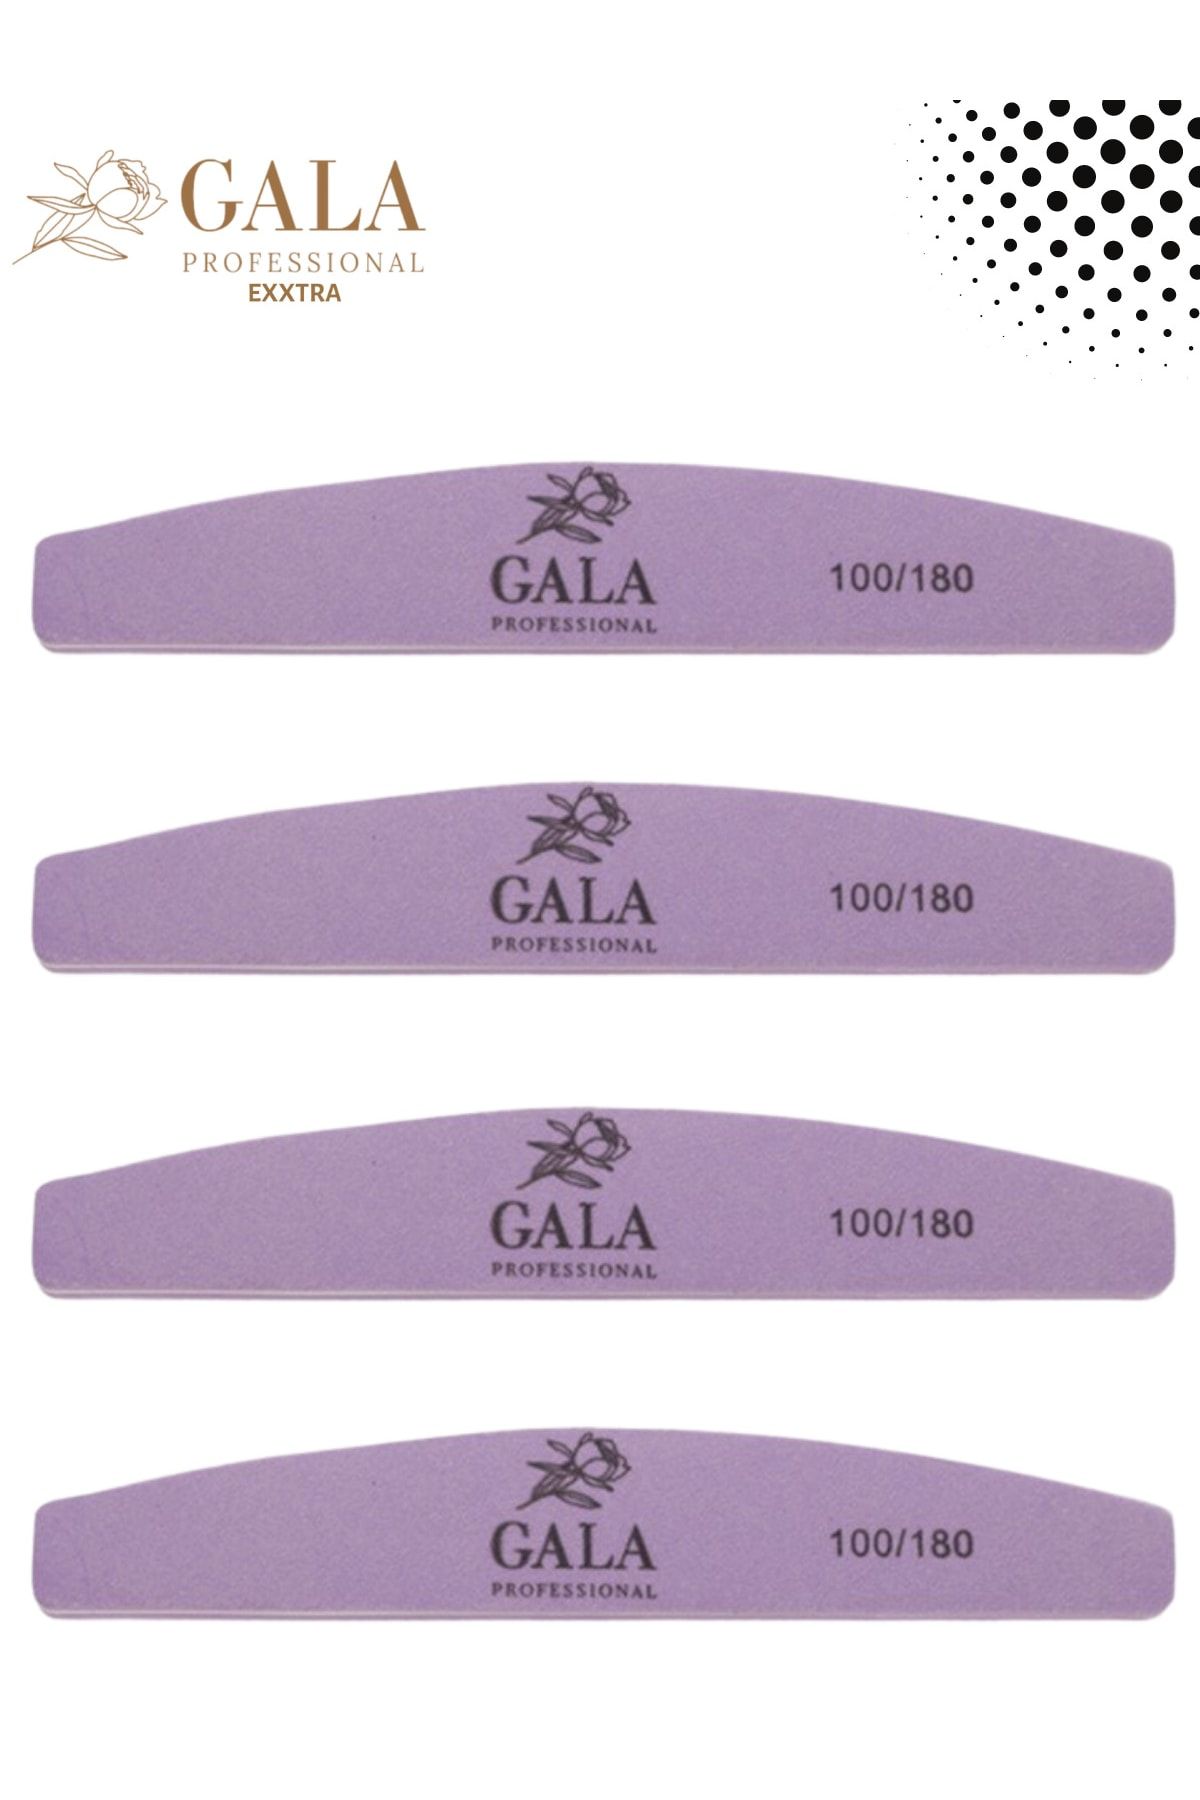 GALA Professional Tnl Exxtra Baffer Buffer Bafır Büyük Sünger Törpü 4 Adet Protez Tırnak Kalıcı Oje